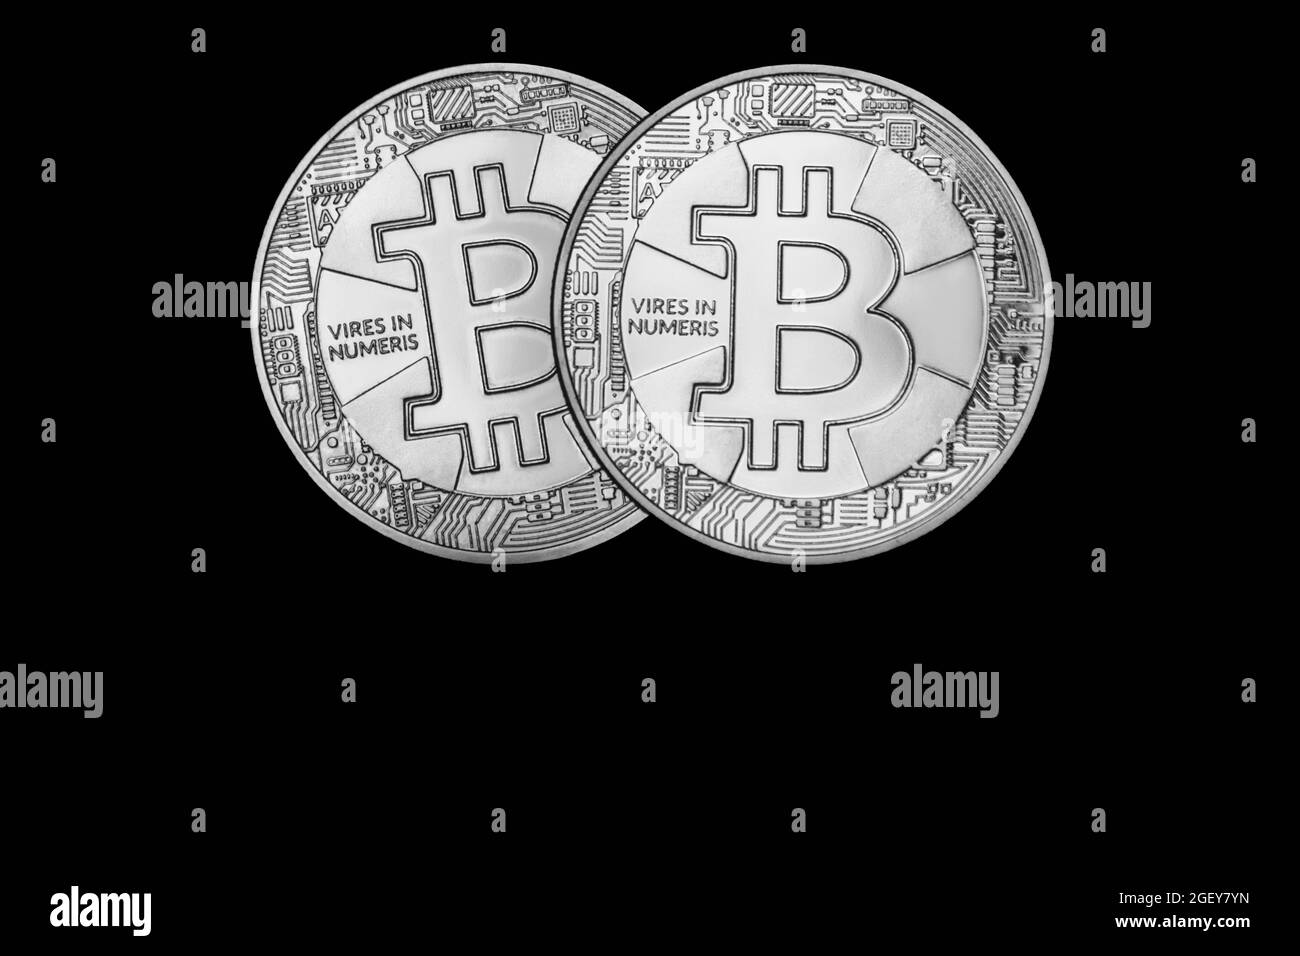 Bitcoin BTC Crypto Currency Coins. Stock Market Concept.Silver colored bitcoin representation coin Stock Photo